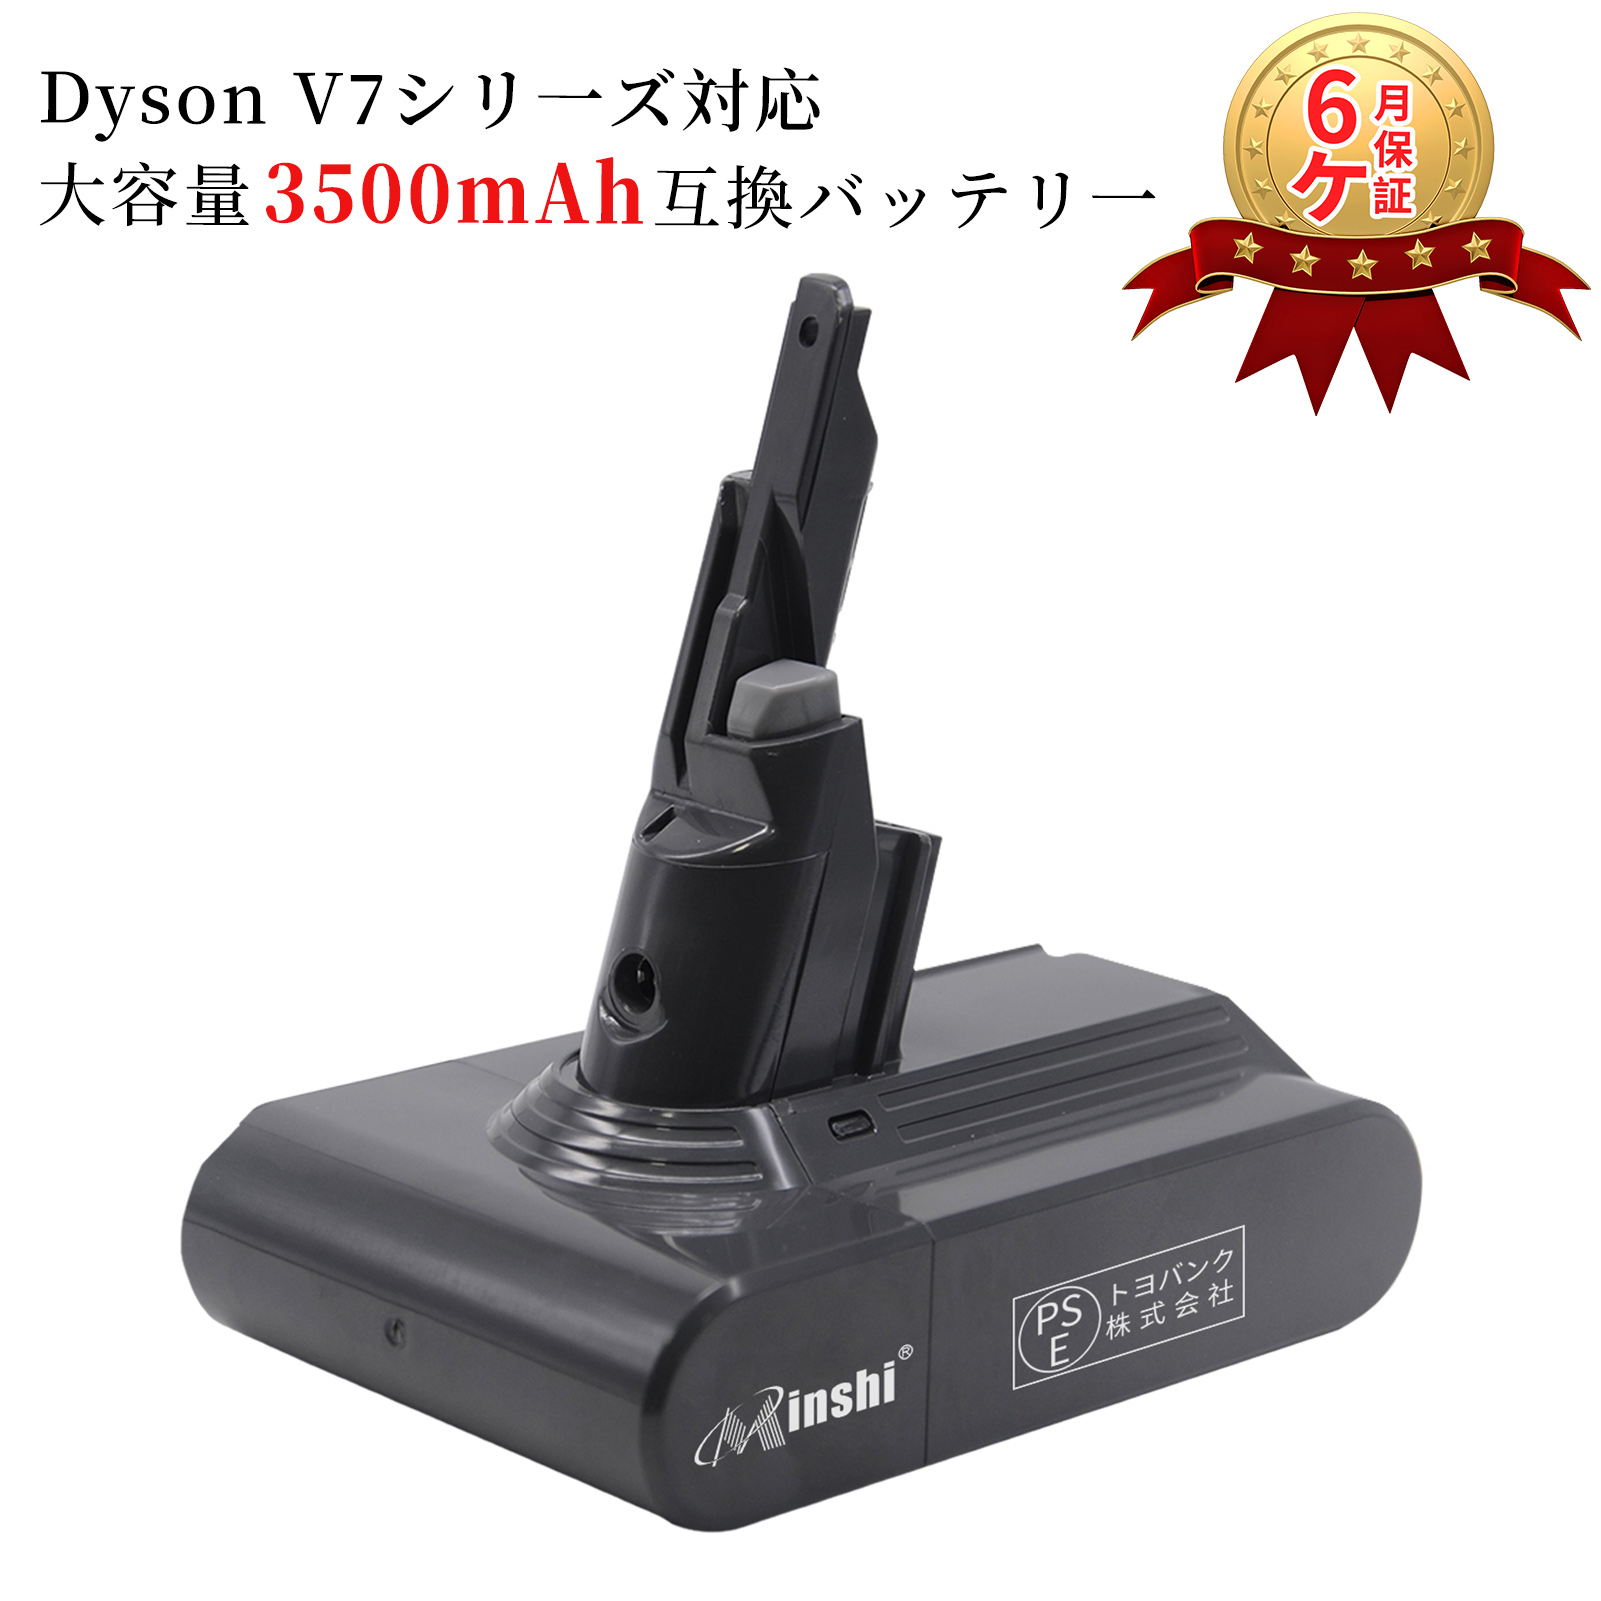 ダイソン dyson v7 sv11 互換 バッテリー Dyson V7 シリーズ 対応 21.6V 3.5Ah バッテリー